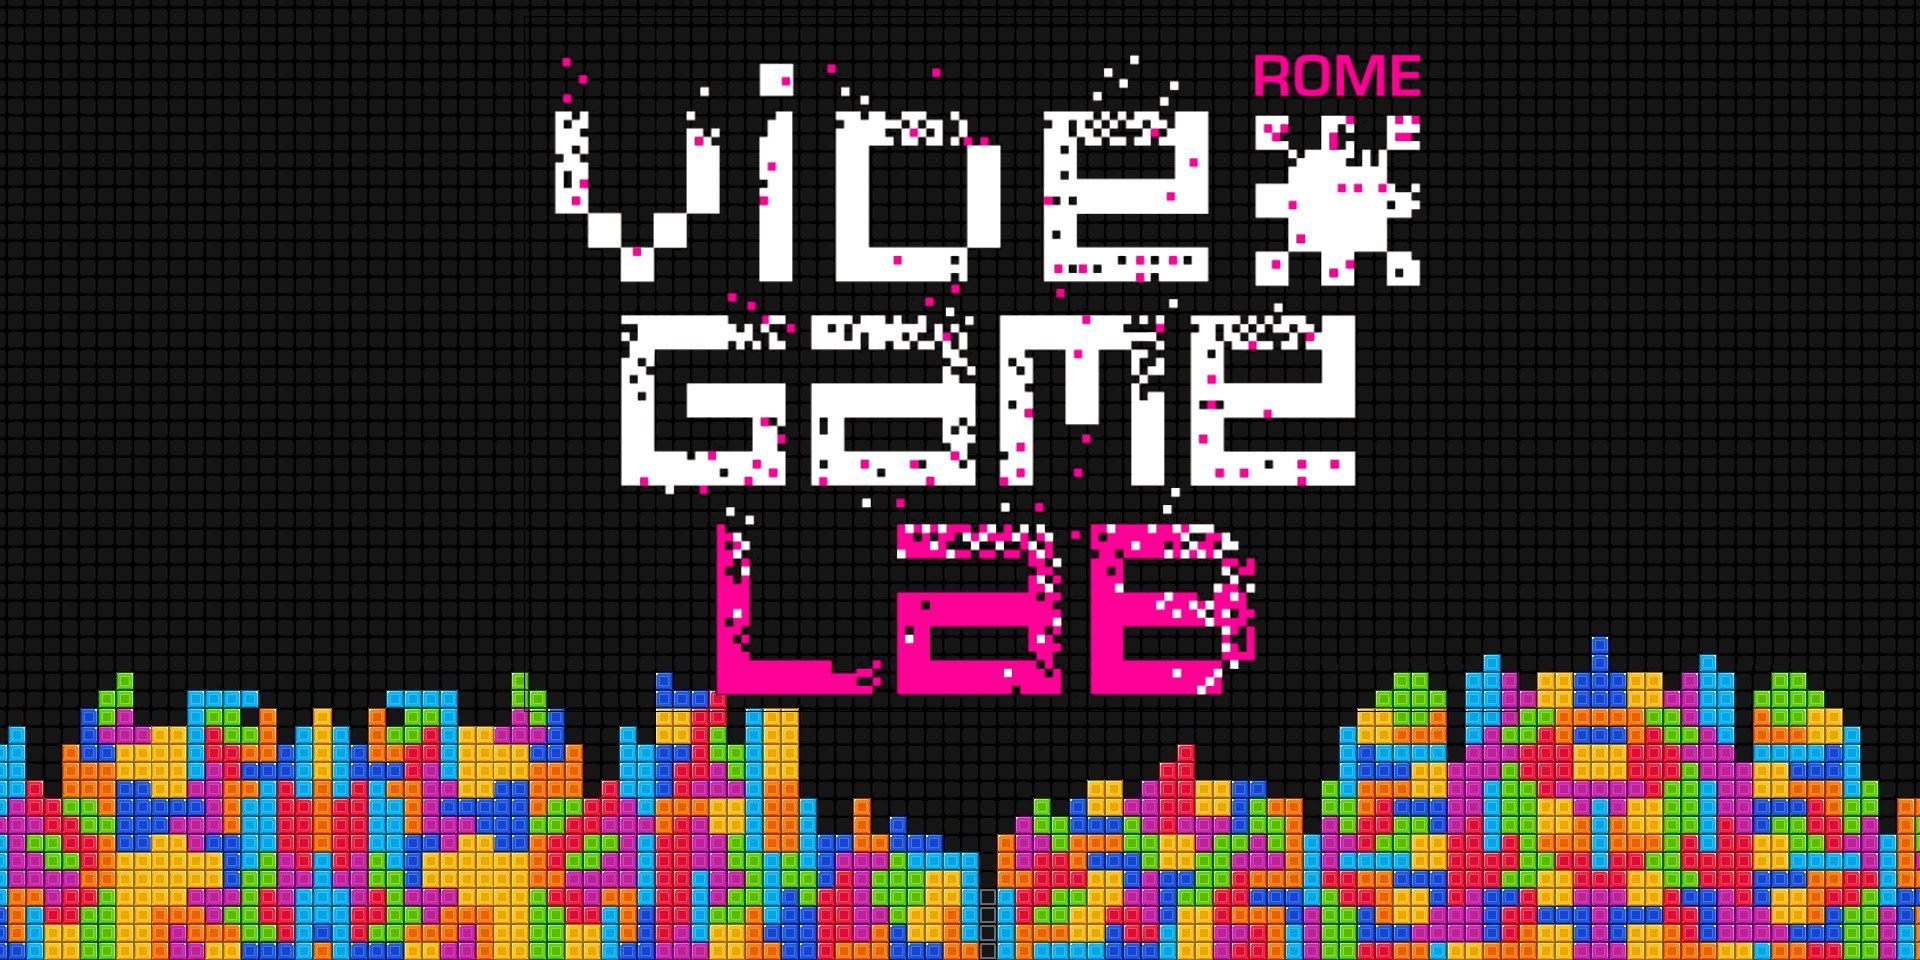 Rome Video Game Laboratory